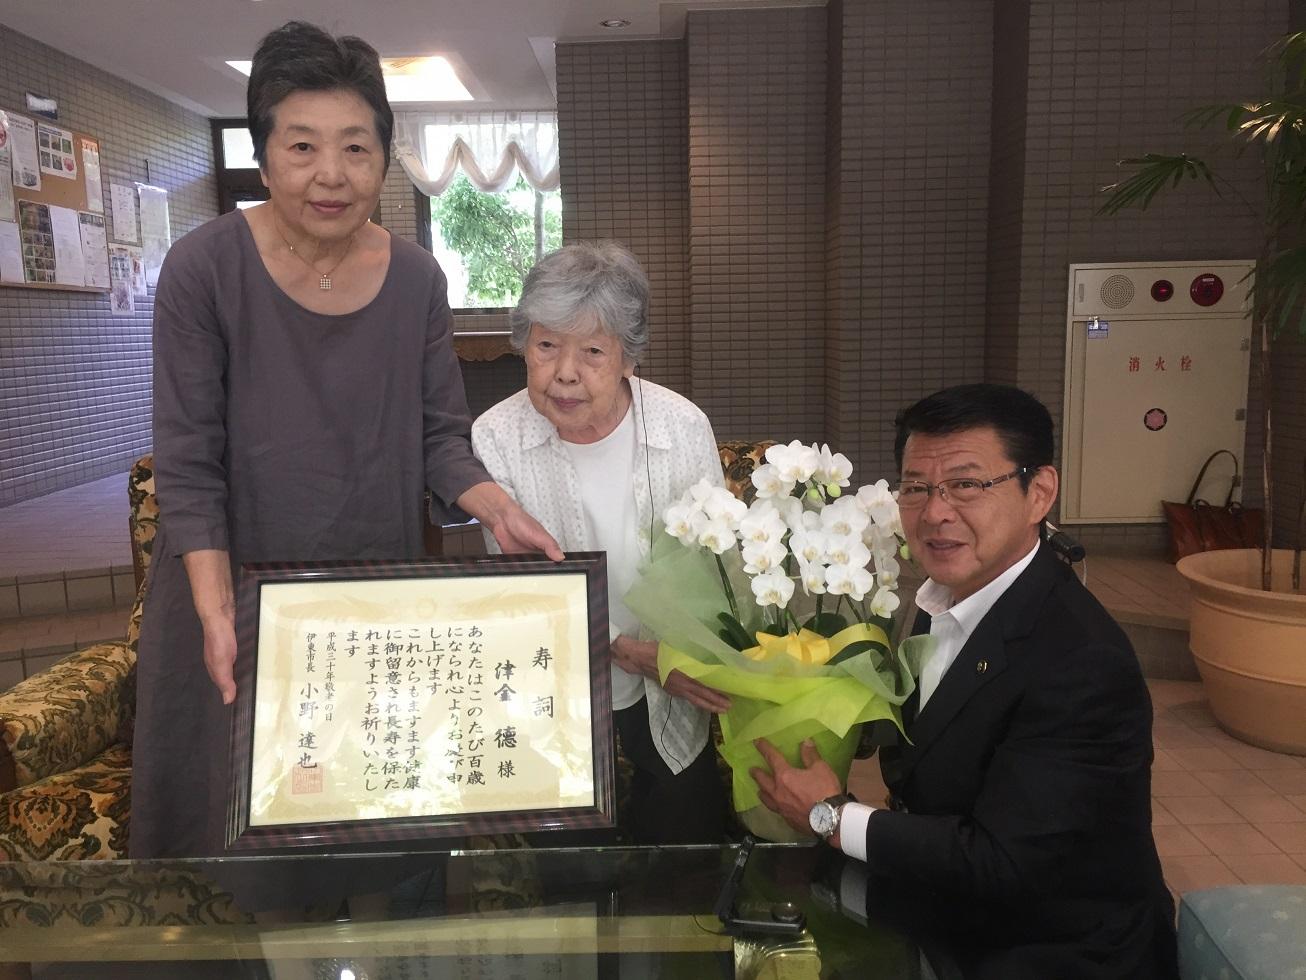 2018年9月12日 寿詞とコチョウランの鉢植えを贈る市長と受け取る津金徳さんの写真